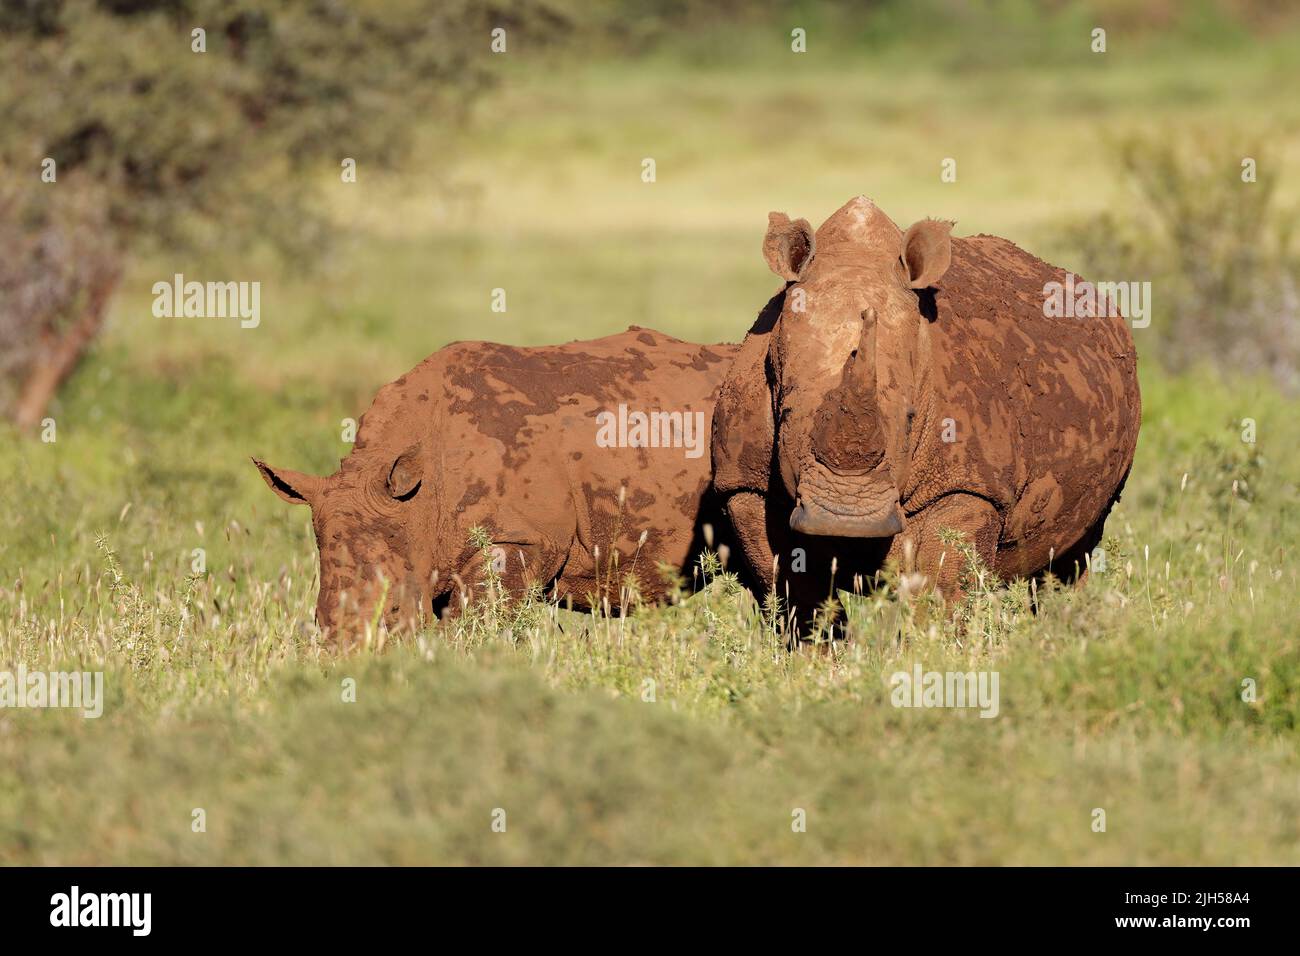 Le rhinocéros blanc (Ceratotherium simum) et son veau dans l'habitat naturel, l'Afrique du Sud Banque D'Images